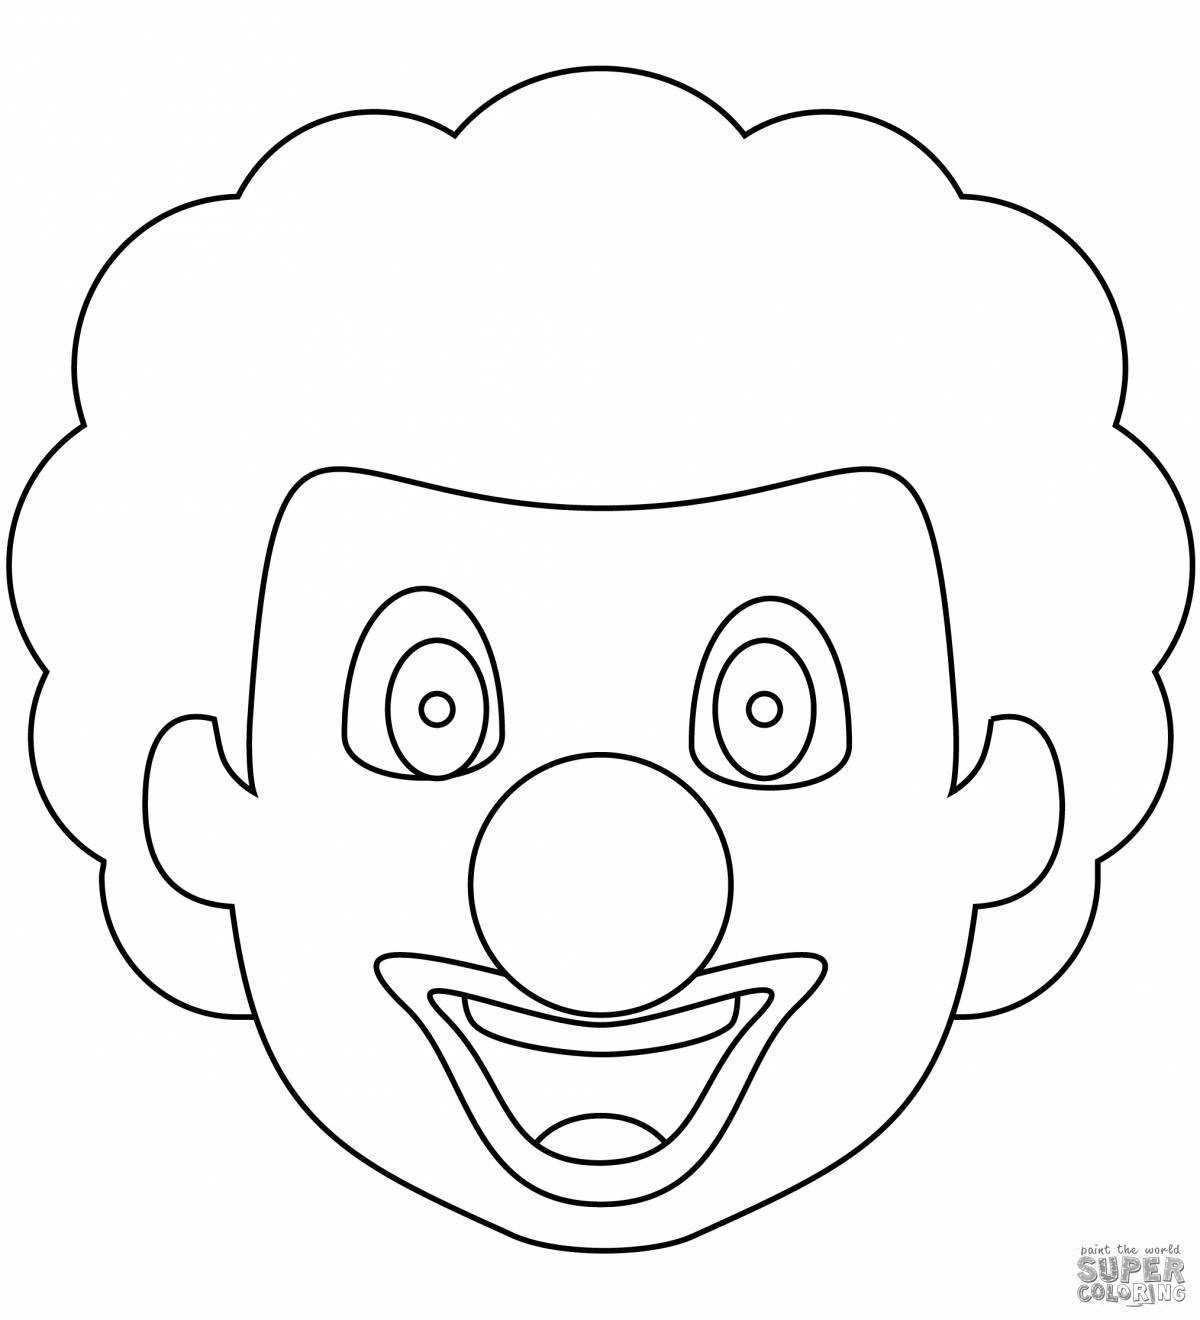 Забавная раскраска лица клоуна для детей